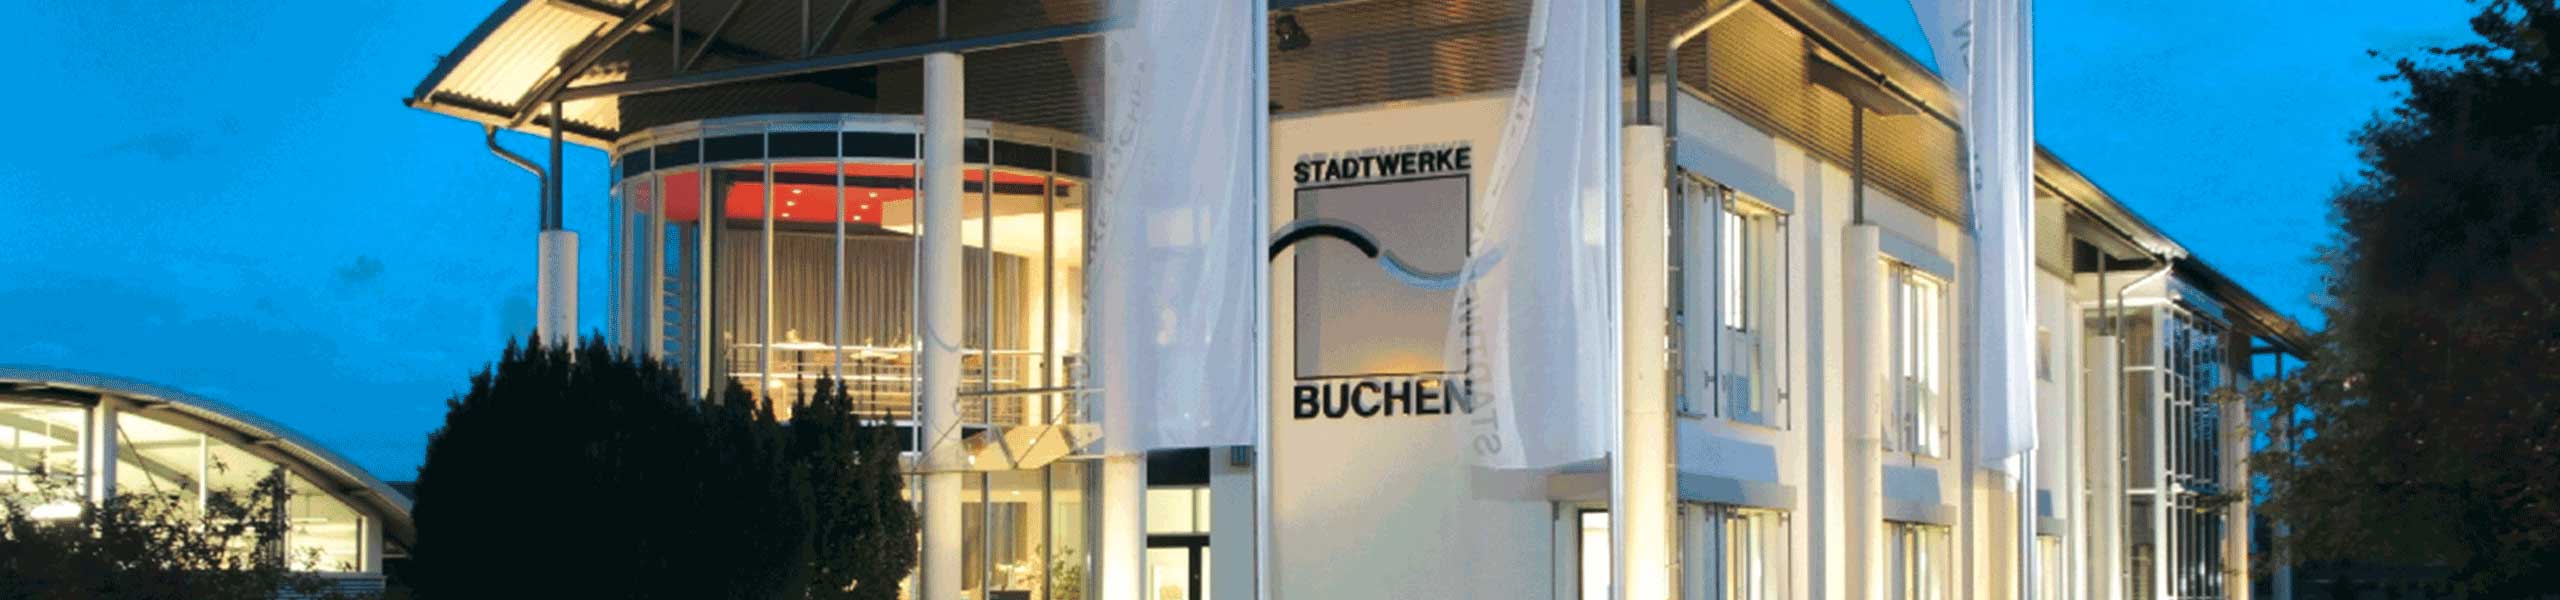 Stadtwerke Buchen GmbH & Co KG - Ihr Versorger vor Ort - Götzingen/Rinschheim